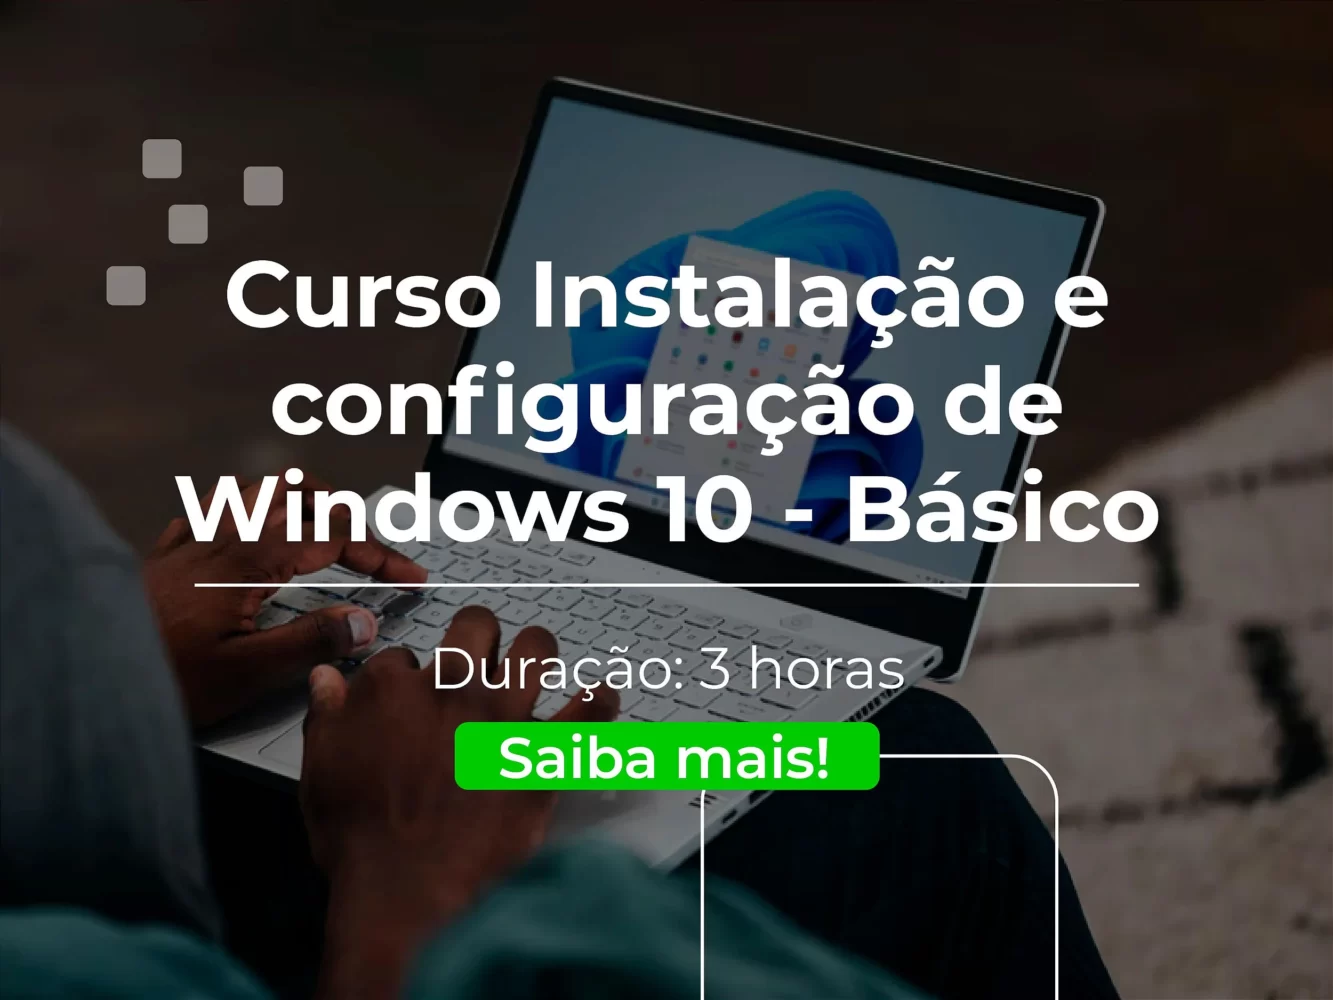 Curso Instalação e configuração de Windows 10 Básico